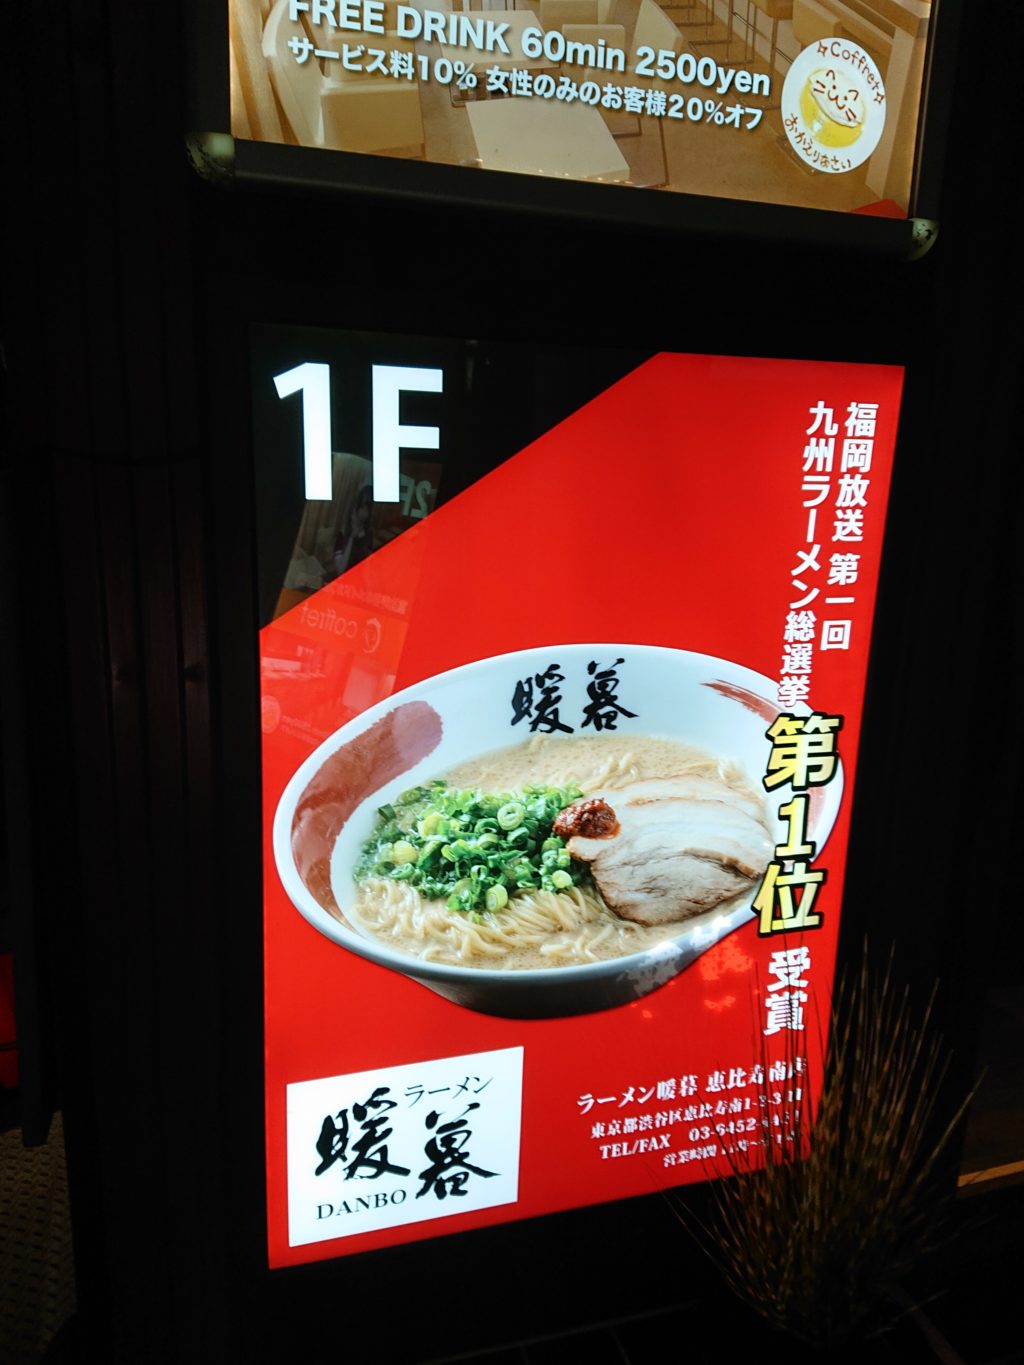 九州ラーメン総選挙で第一位となったお店が暖暮というお店